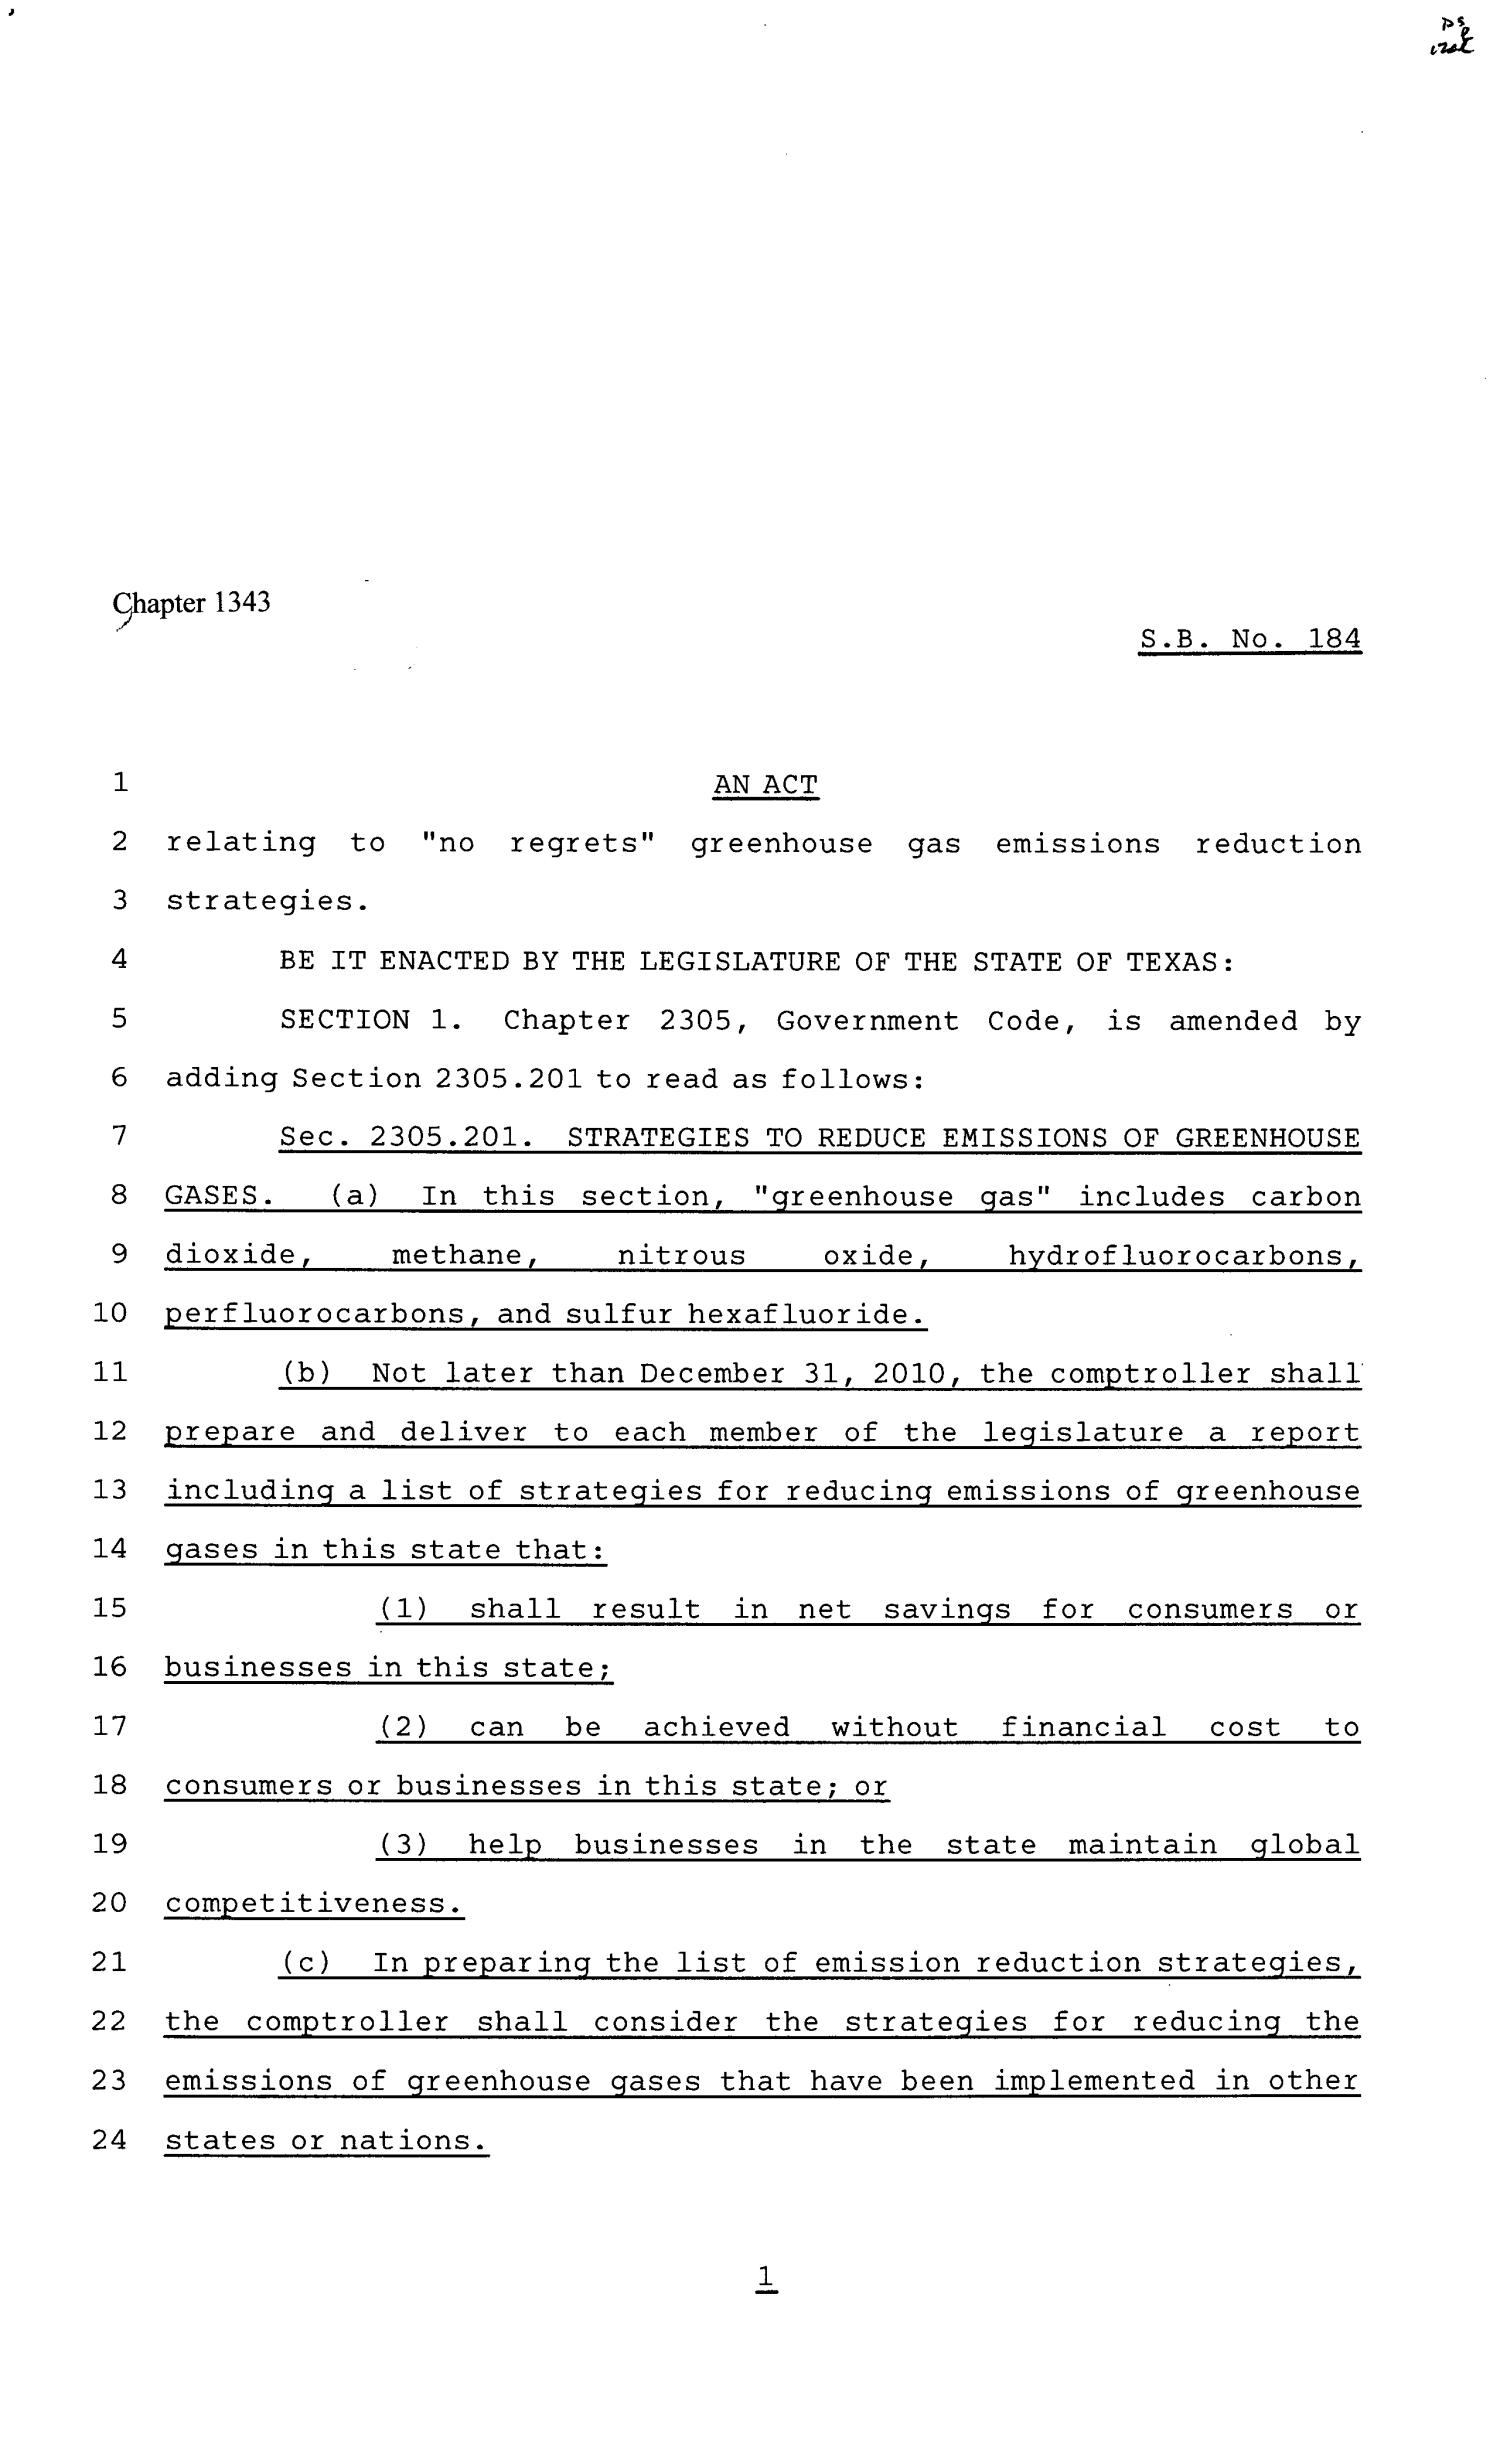 81st Texas Legislature, Senate Bill 184, Chapter 1343
                                                
                                                    [Sequence #]: 1 of 3
                                                